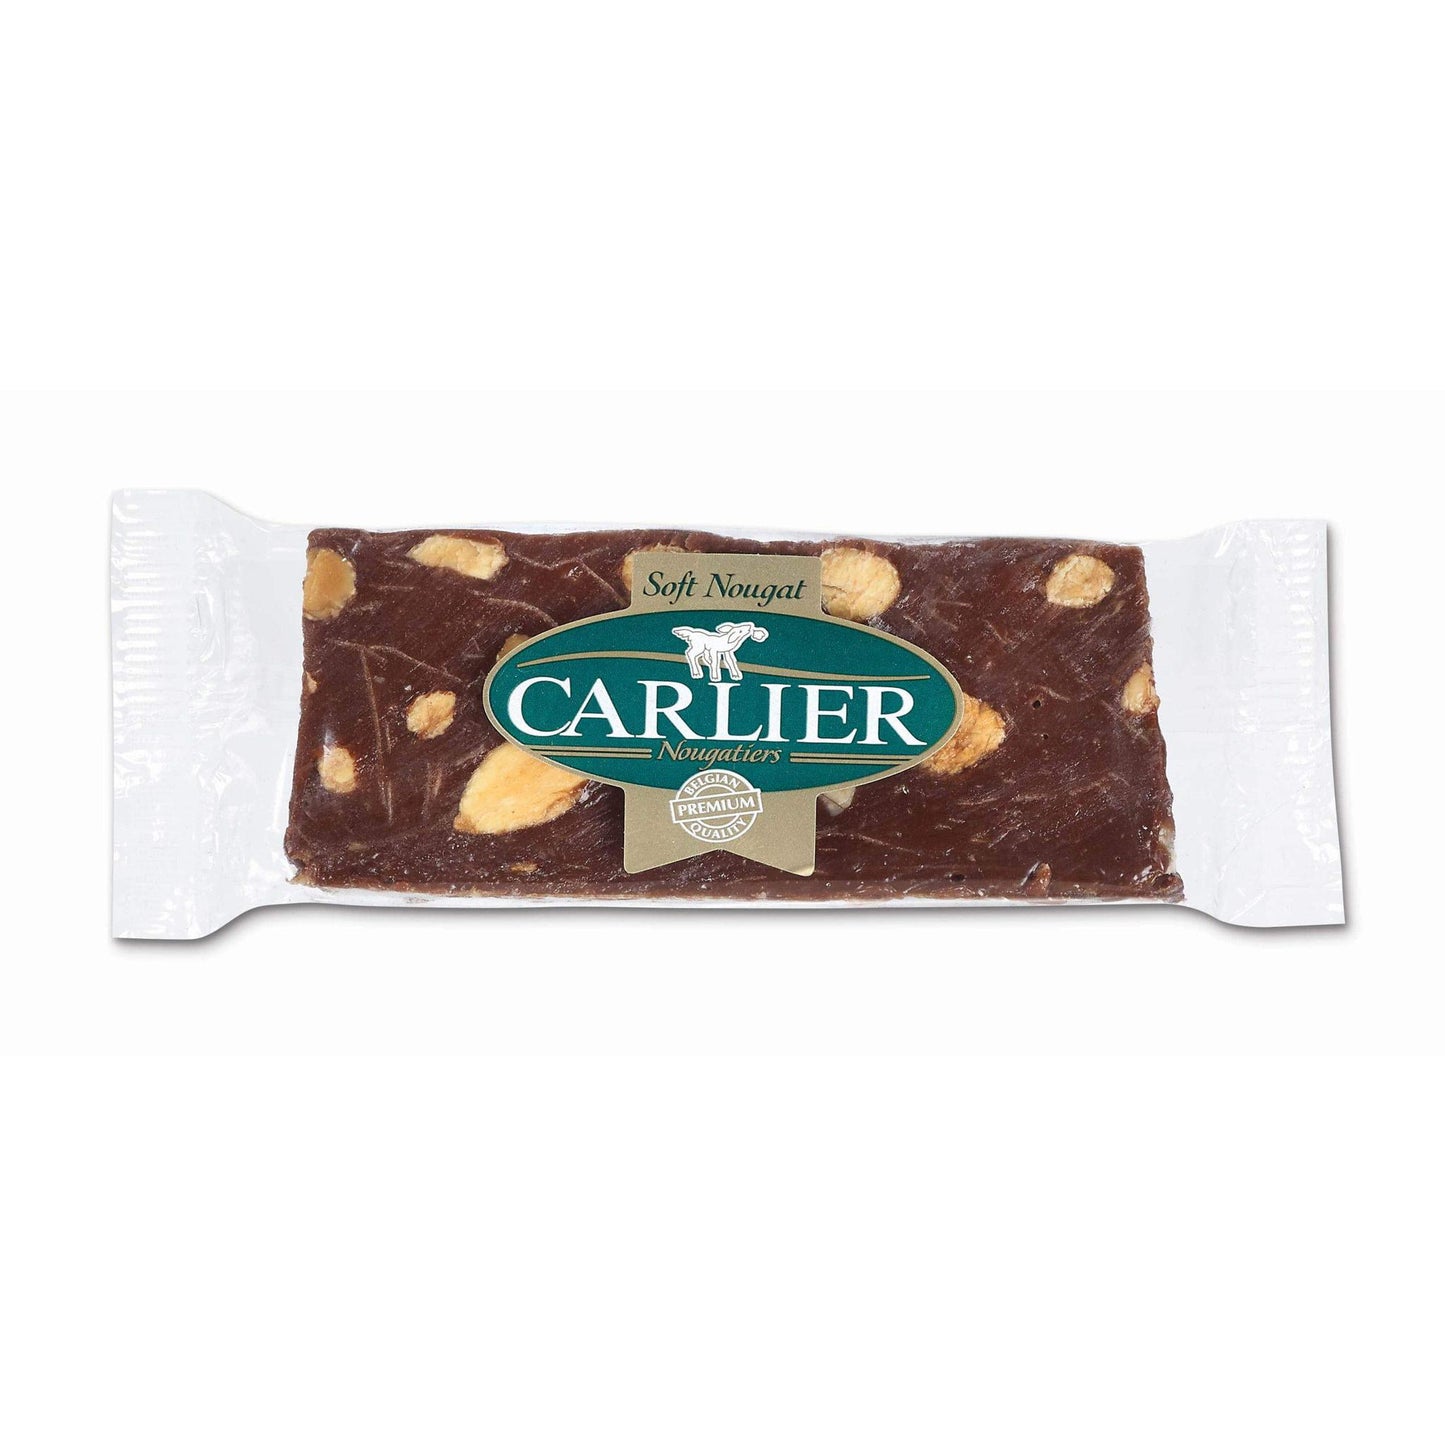 Nougat - Chocolate, Almond, and Fleur de Sel (Carlier)